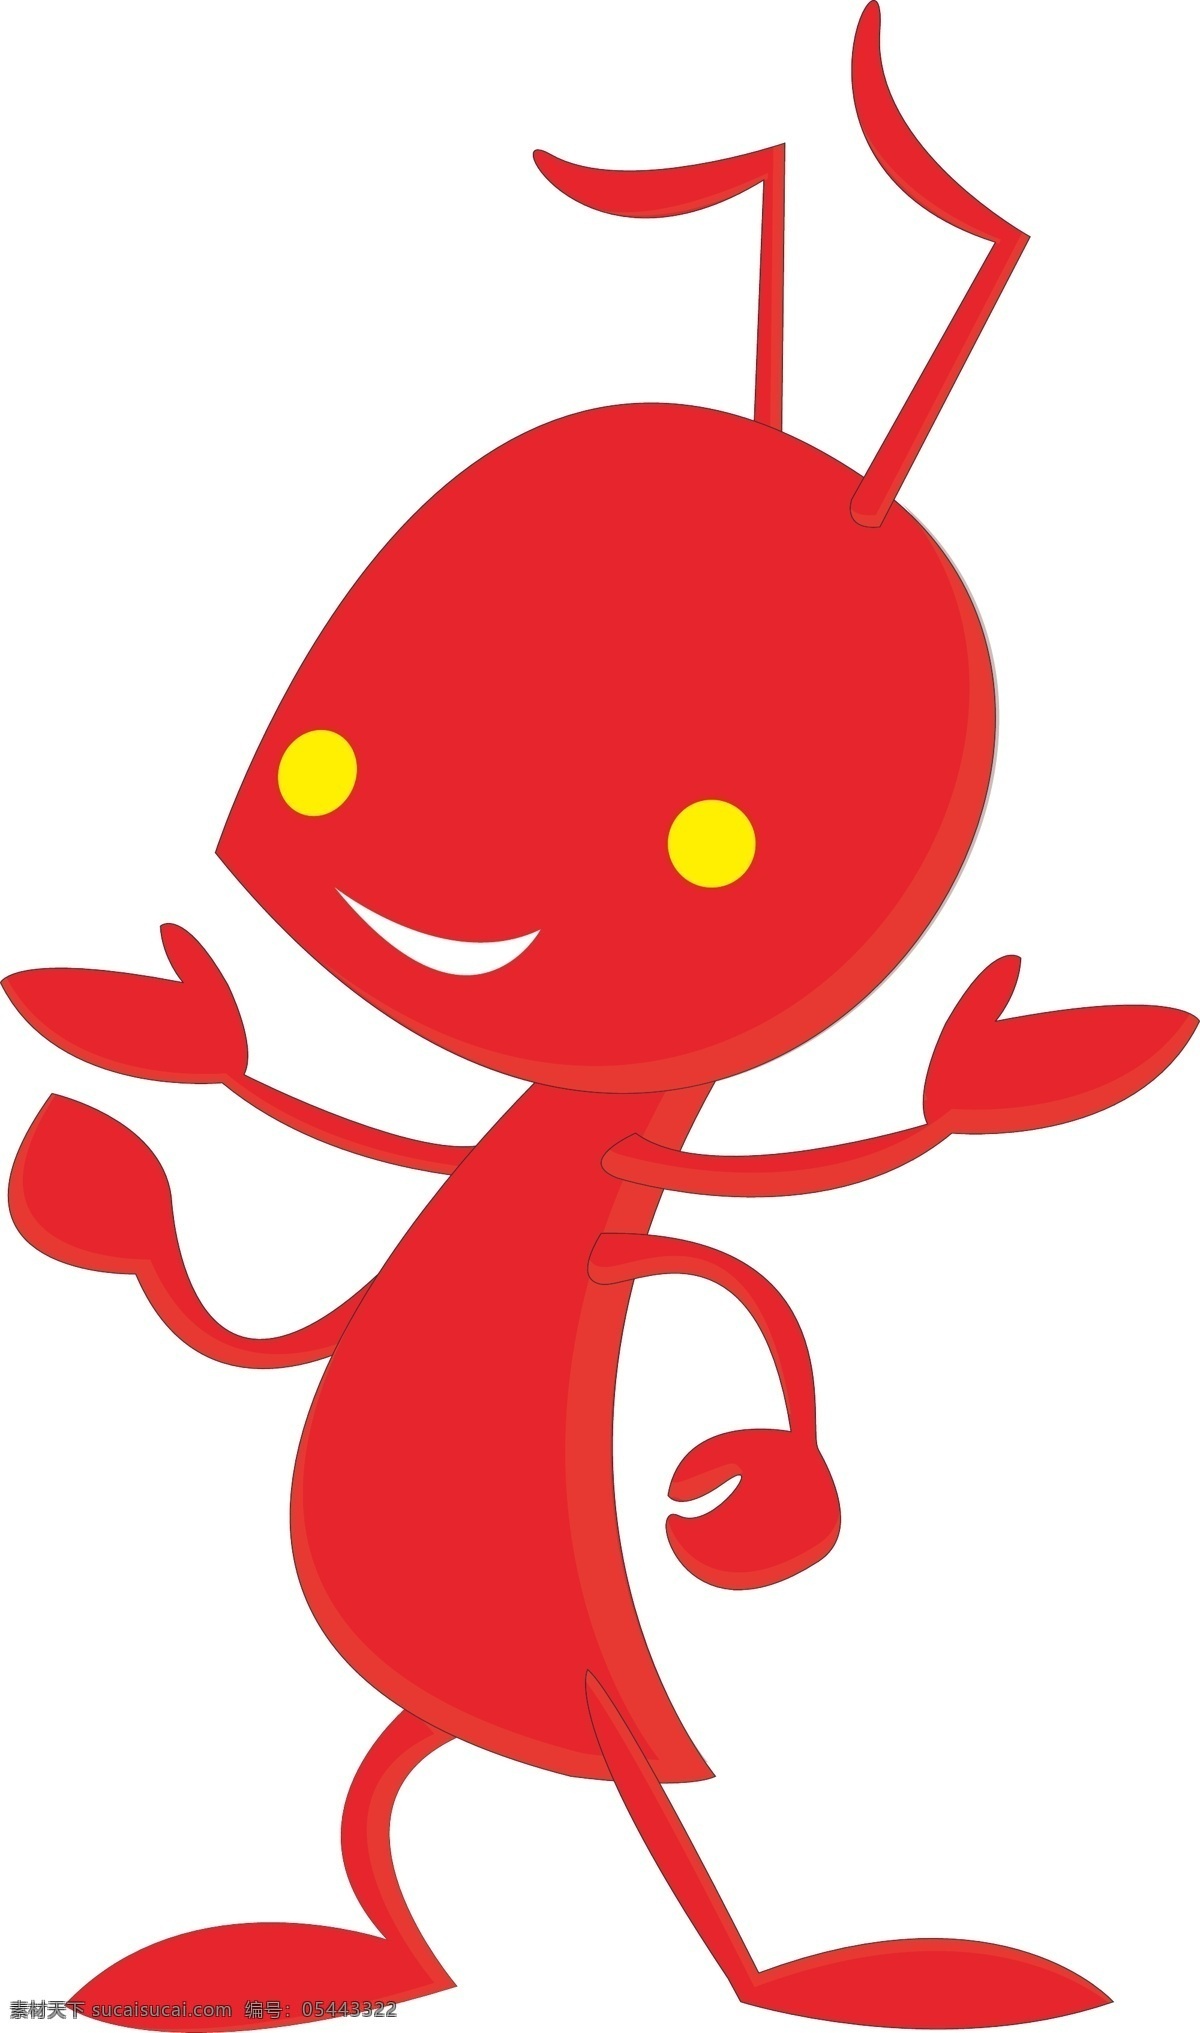 红 蚂蚁 红色 卡通蚂蚁 红蚂蚁 原创设计 其他原创设计